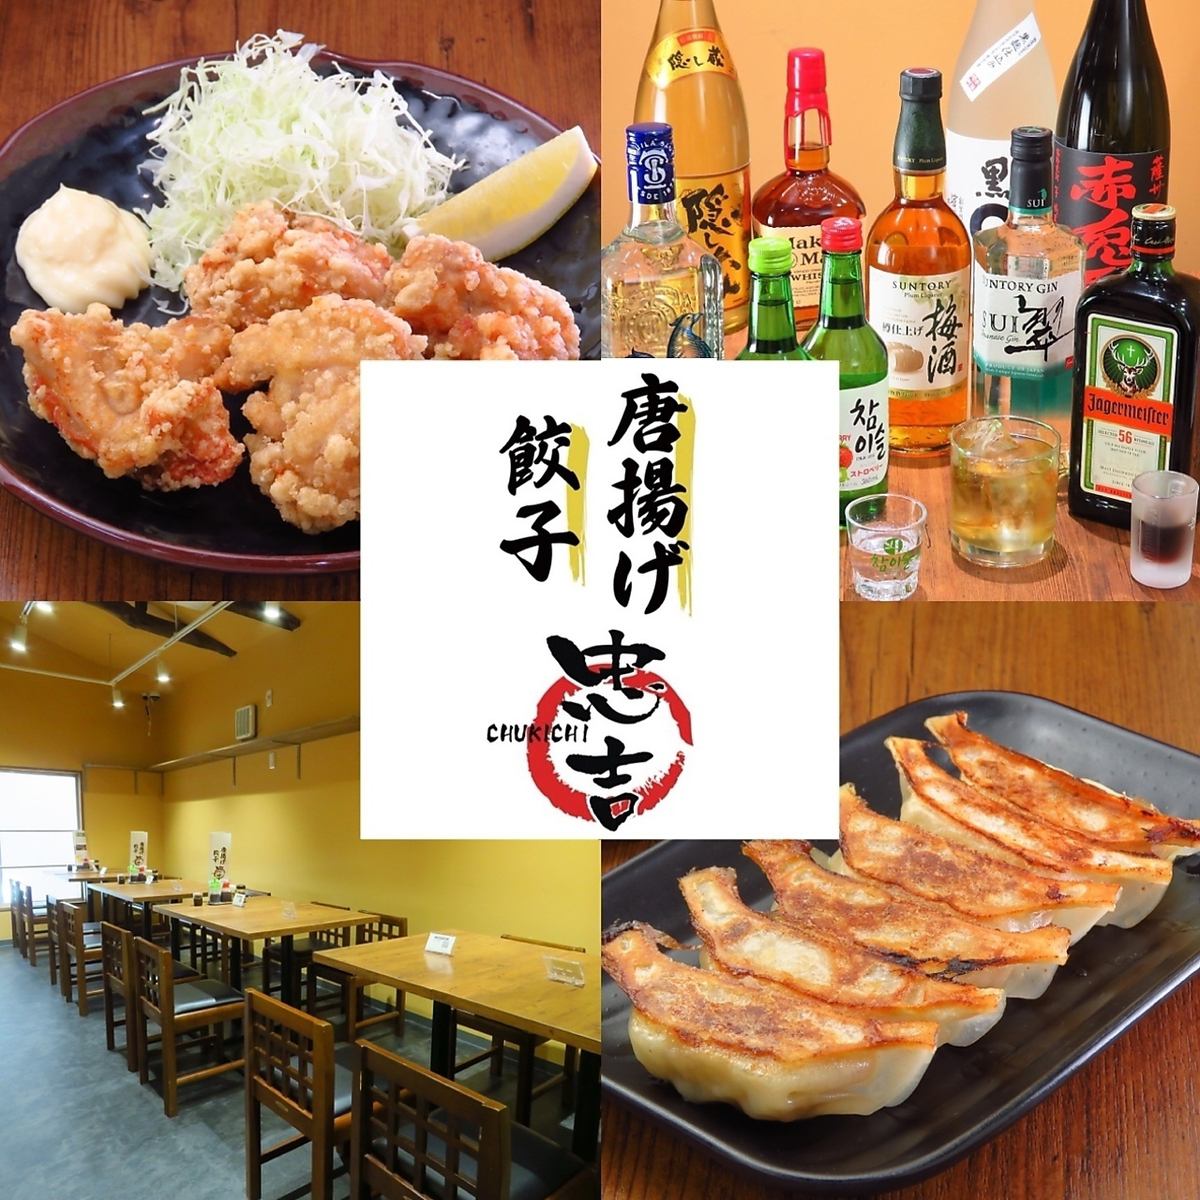 在西新宿可以享用炸鸡和饺子的居酒屋。